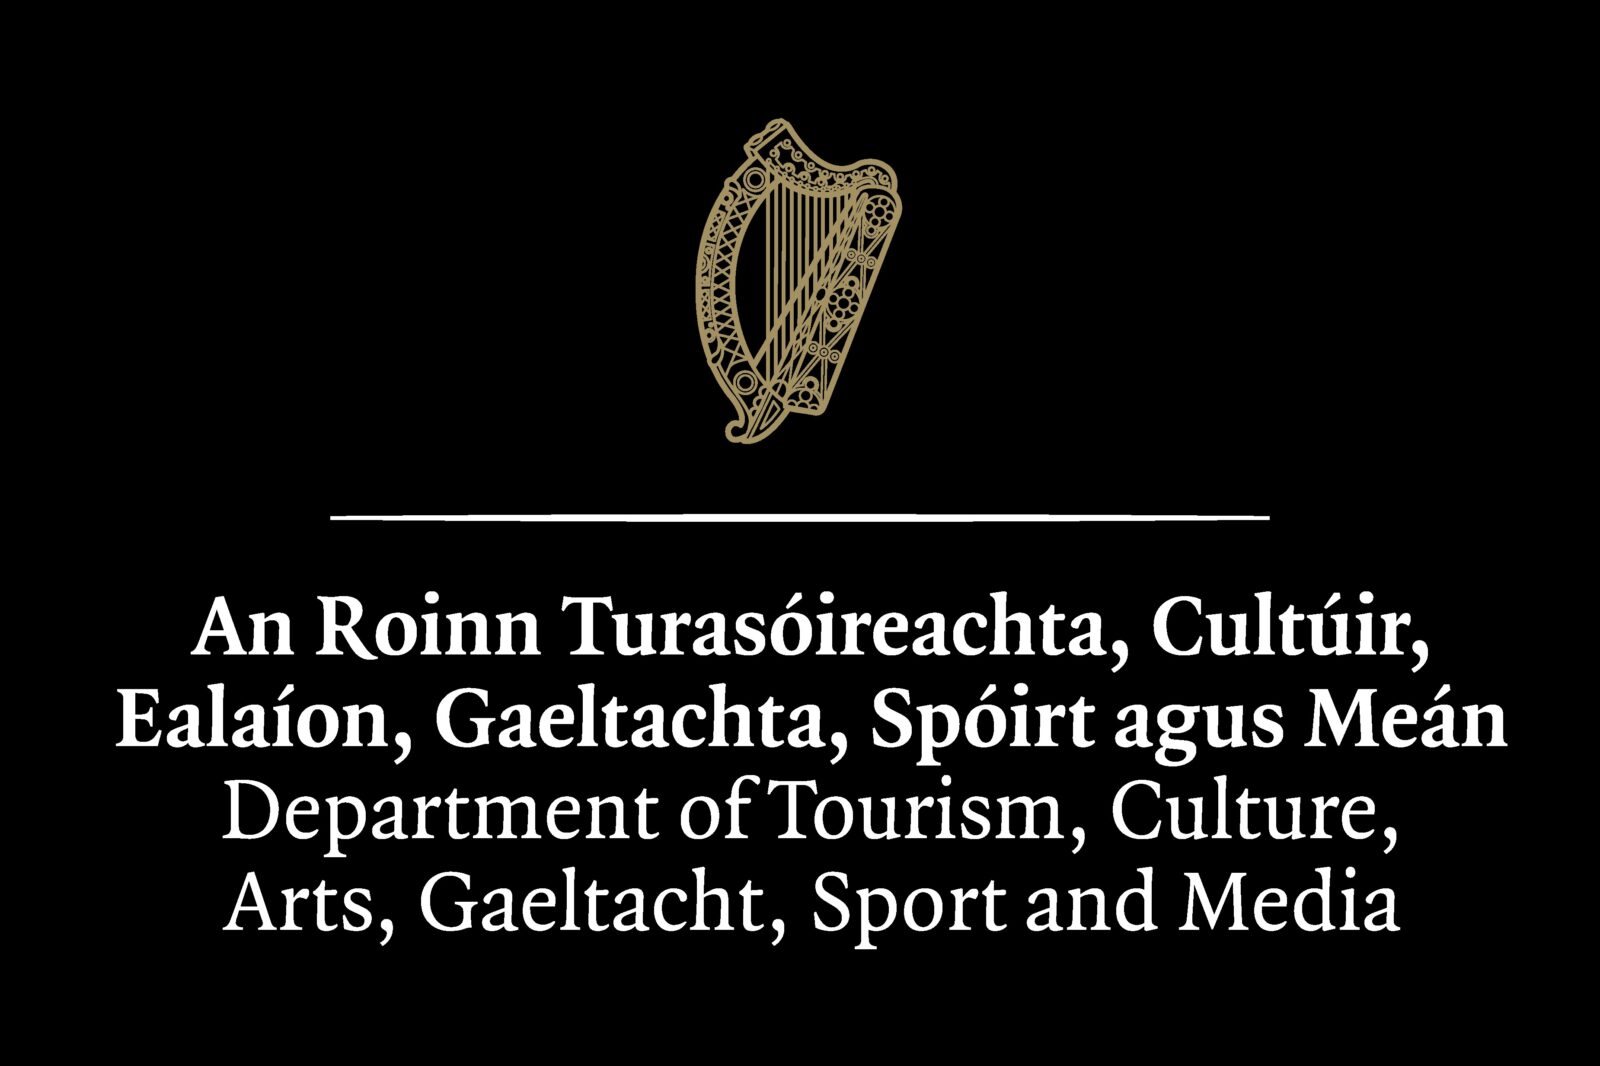 An Roinn Turasóireachta, Cultúir,Ealaíon, Gaeltachta, Spórt agus Meán